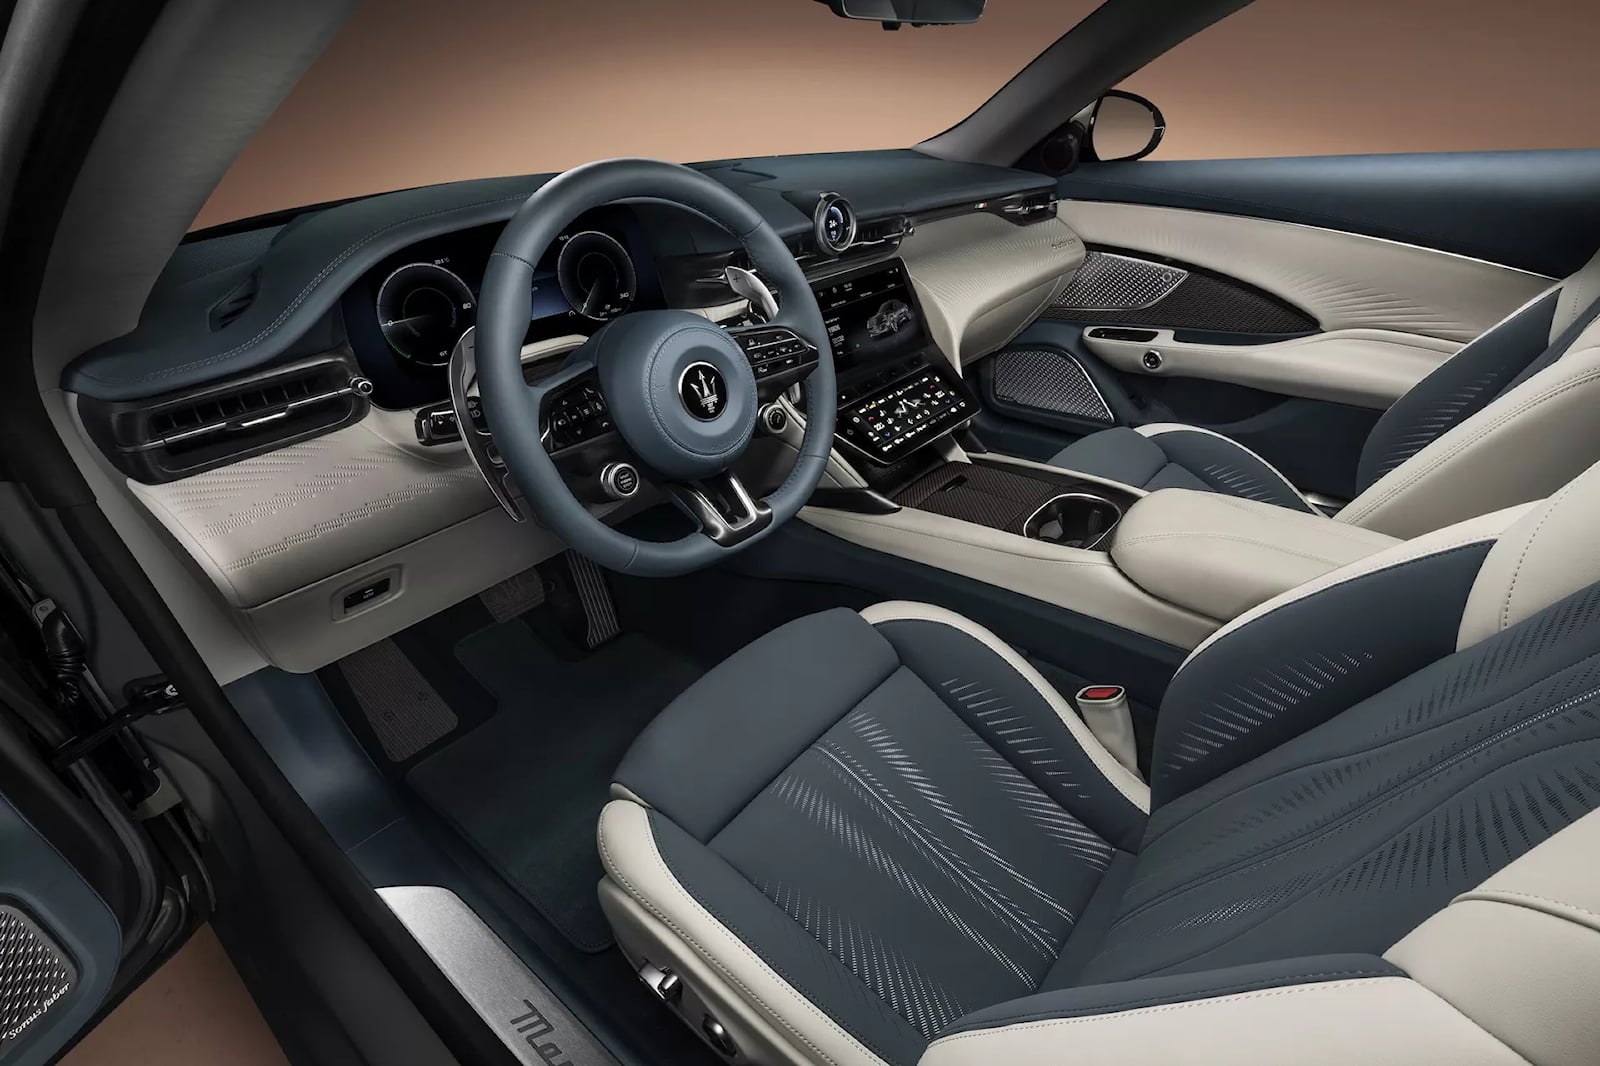 Maserati утверждает, что у нового GT имеет «самый простой и быстрый цифровой климат-контроль на рынке», но мы все еще не можем не закатить глаза автопроизводителям за то, что они отказываются усвоить урок о том, что не использовать физическое управле